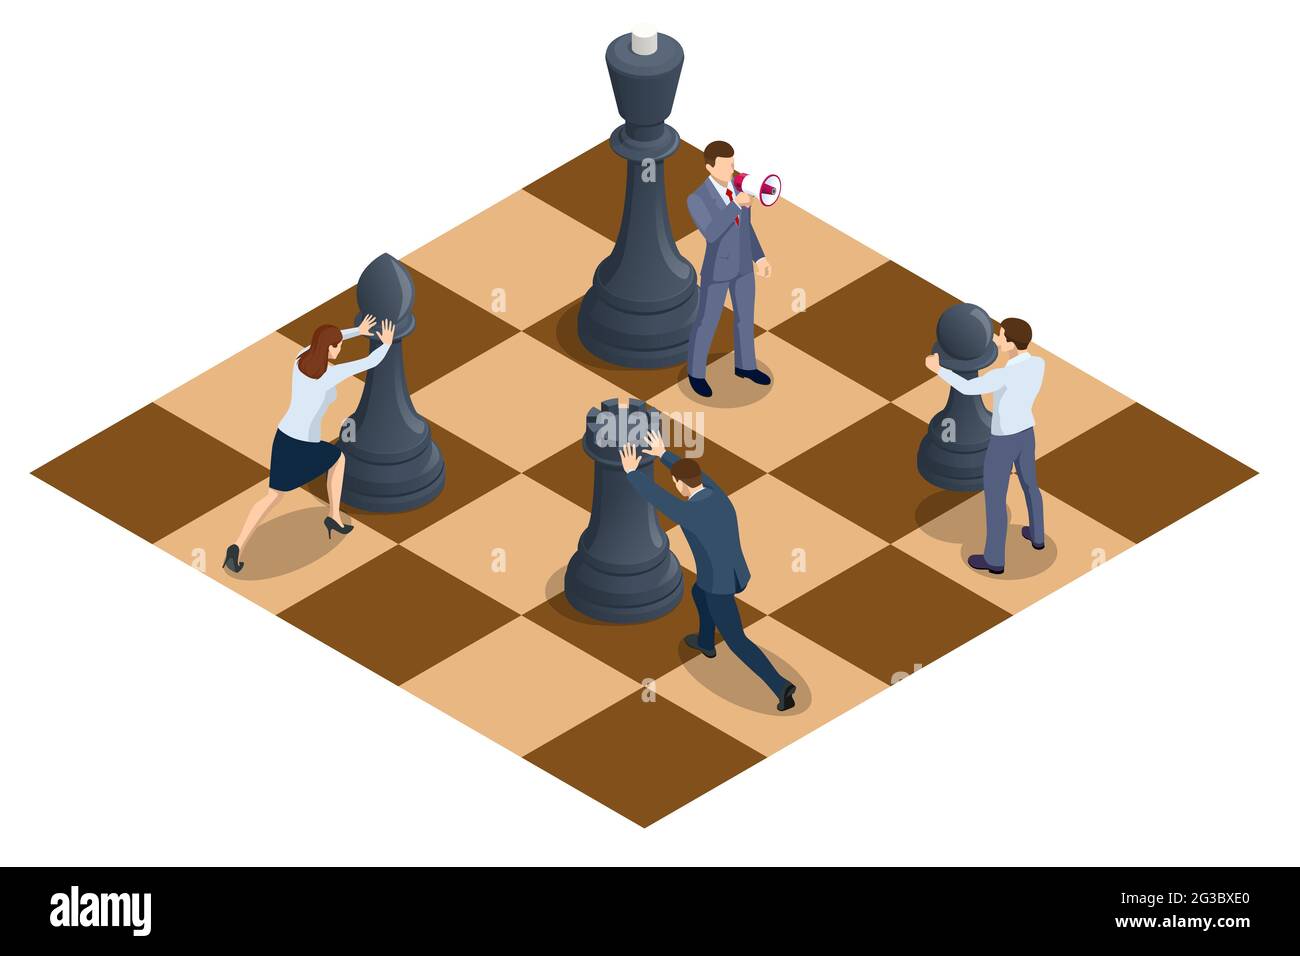 Concepto de estrategia empresarial. Gente moviendo piezas de ajedrez en un  tablero de ajedrez. Hombres de negocios y mujeres isométricos que juegan al  juego de ajedrez llegando a planear la estrategia para